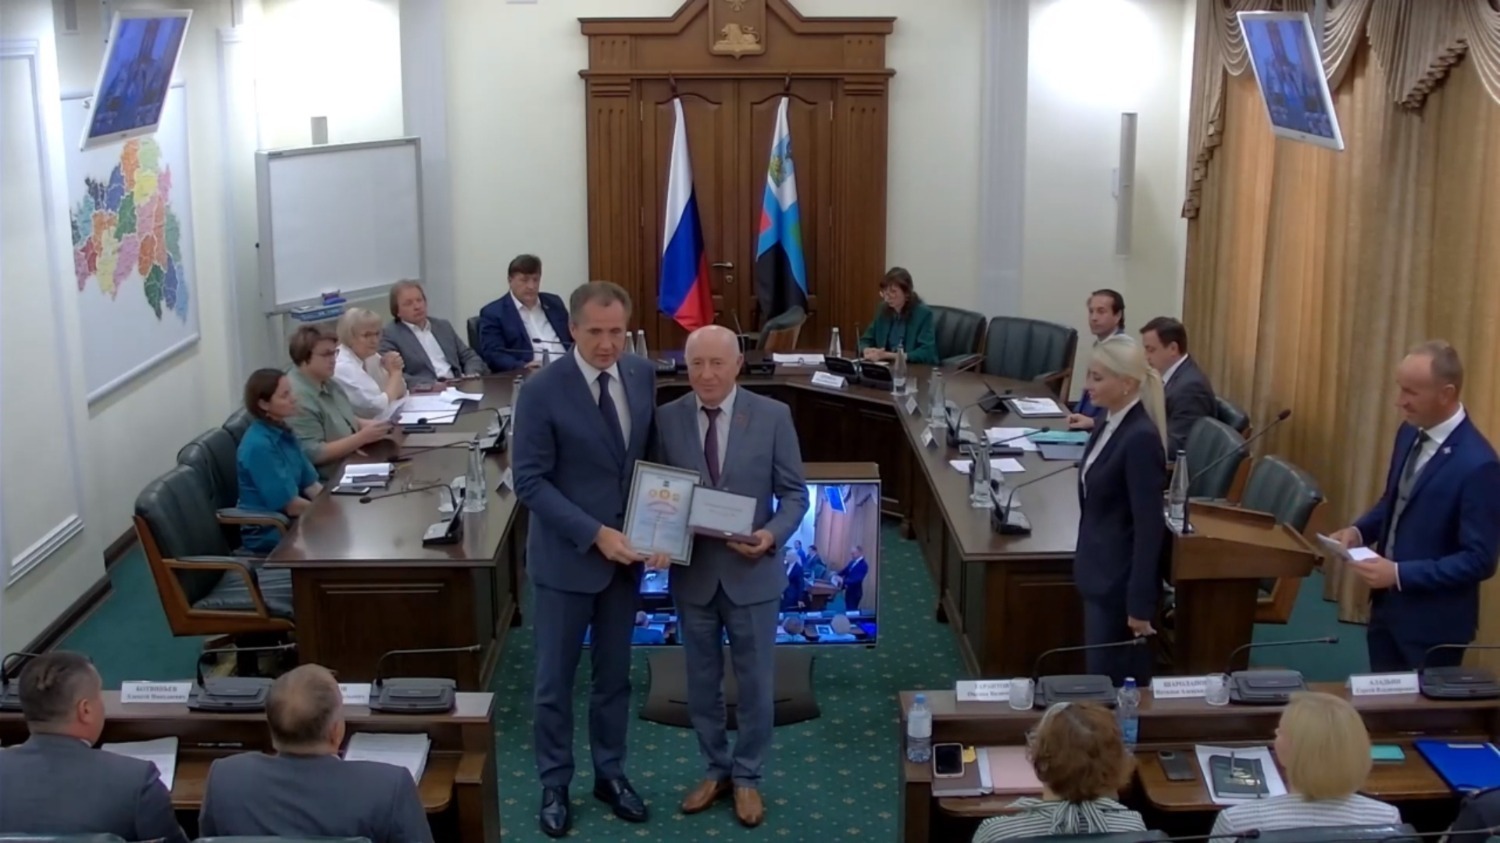 Выдающиеся заслуги: Александр Панин получил Высший знак отличия Белгородской области